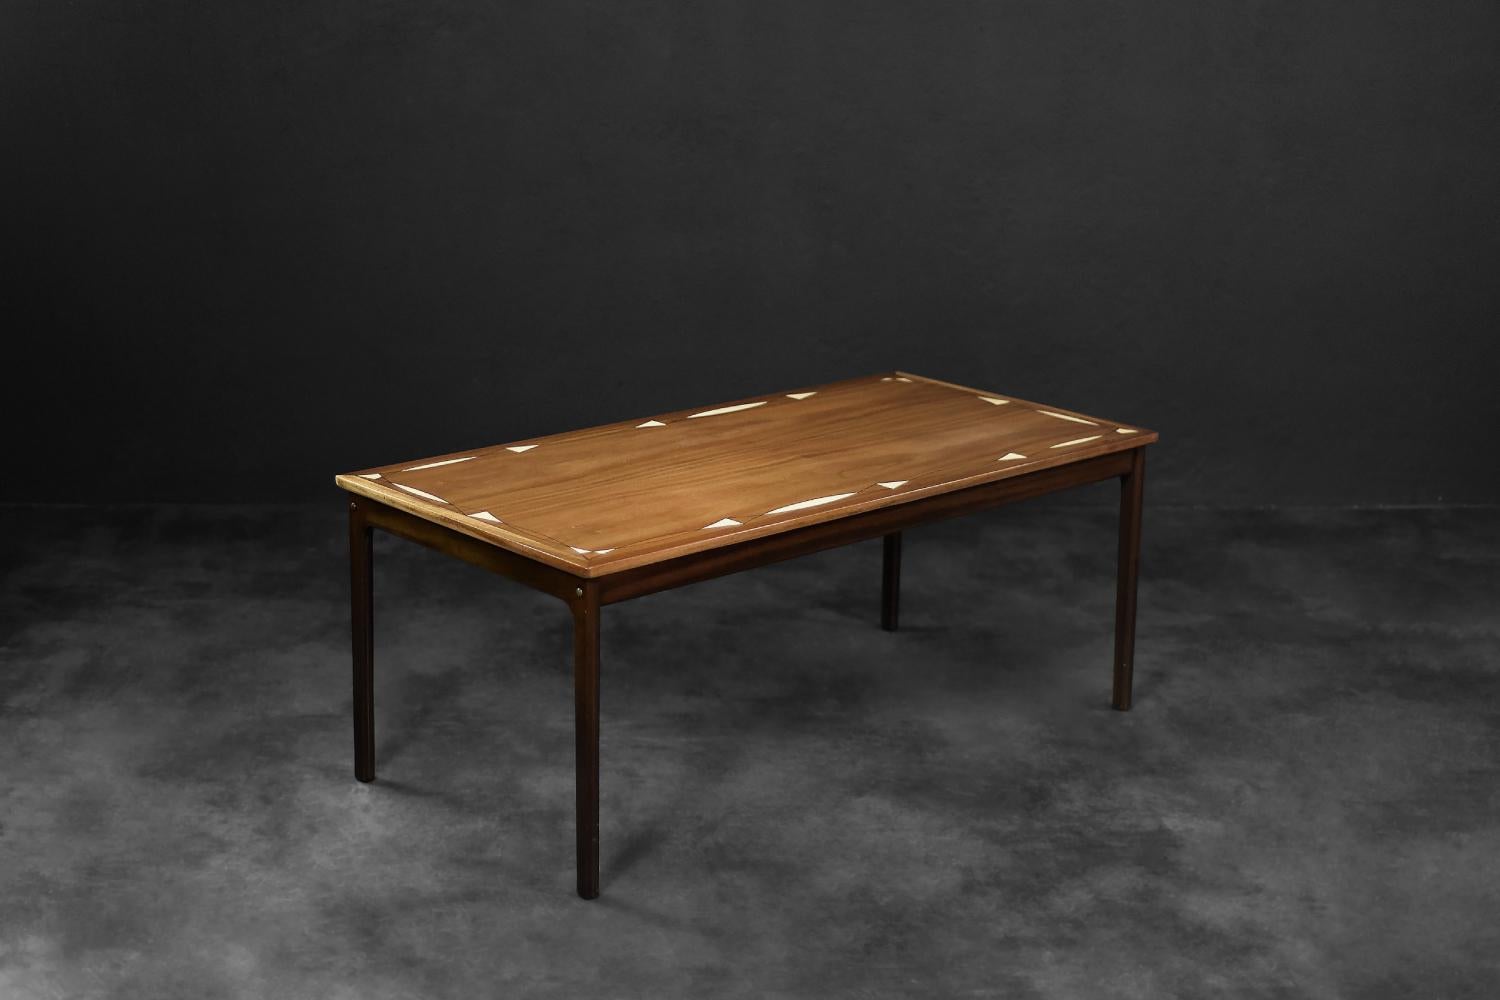 Le piètement de cette table est une création d'Ole Wanscher pour le fabricant danois PJ Møbler. Il a été réalisé dans les années 1960. Il est fabriqué en acajou foncé de haute qualité avec un grain intéressant. Le plateau de la table est décoré de